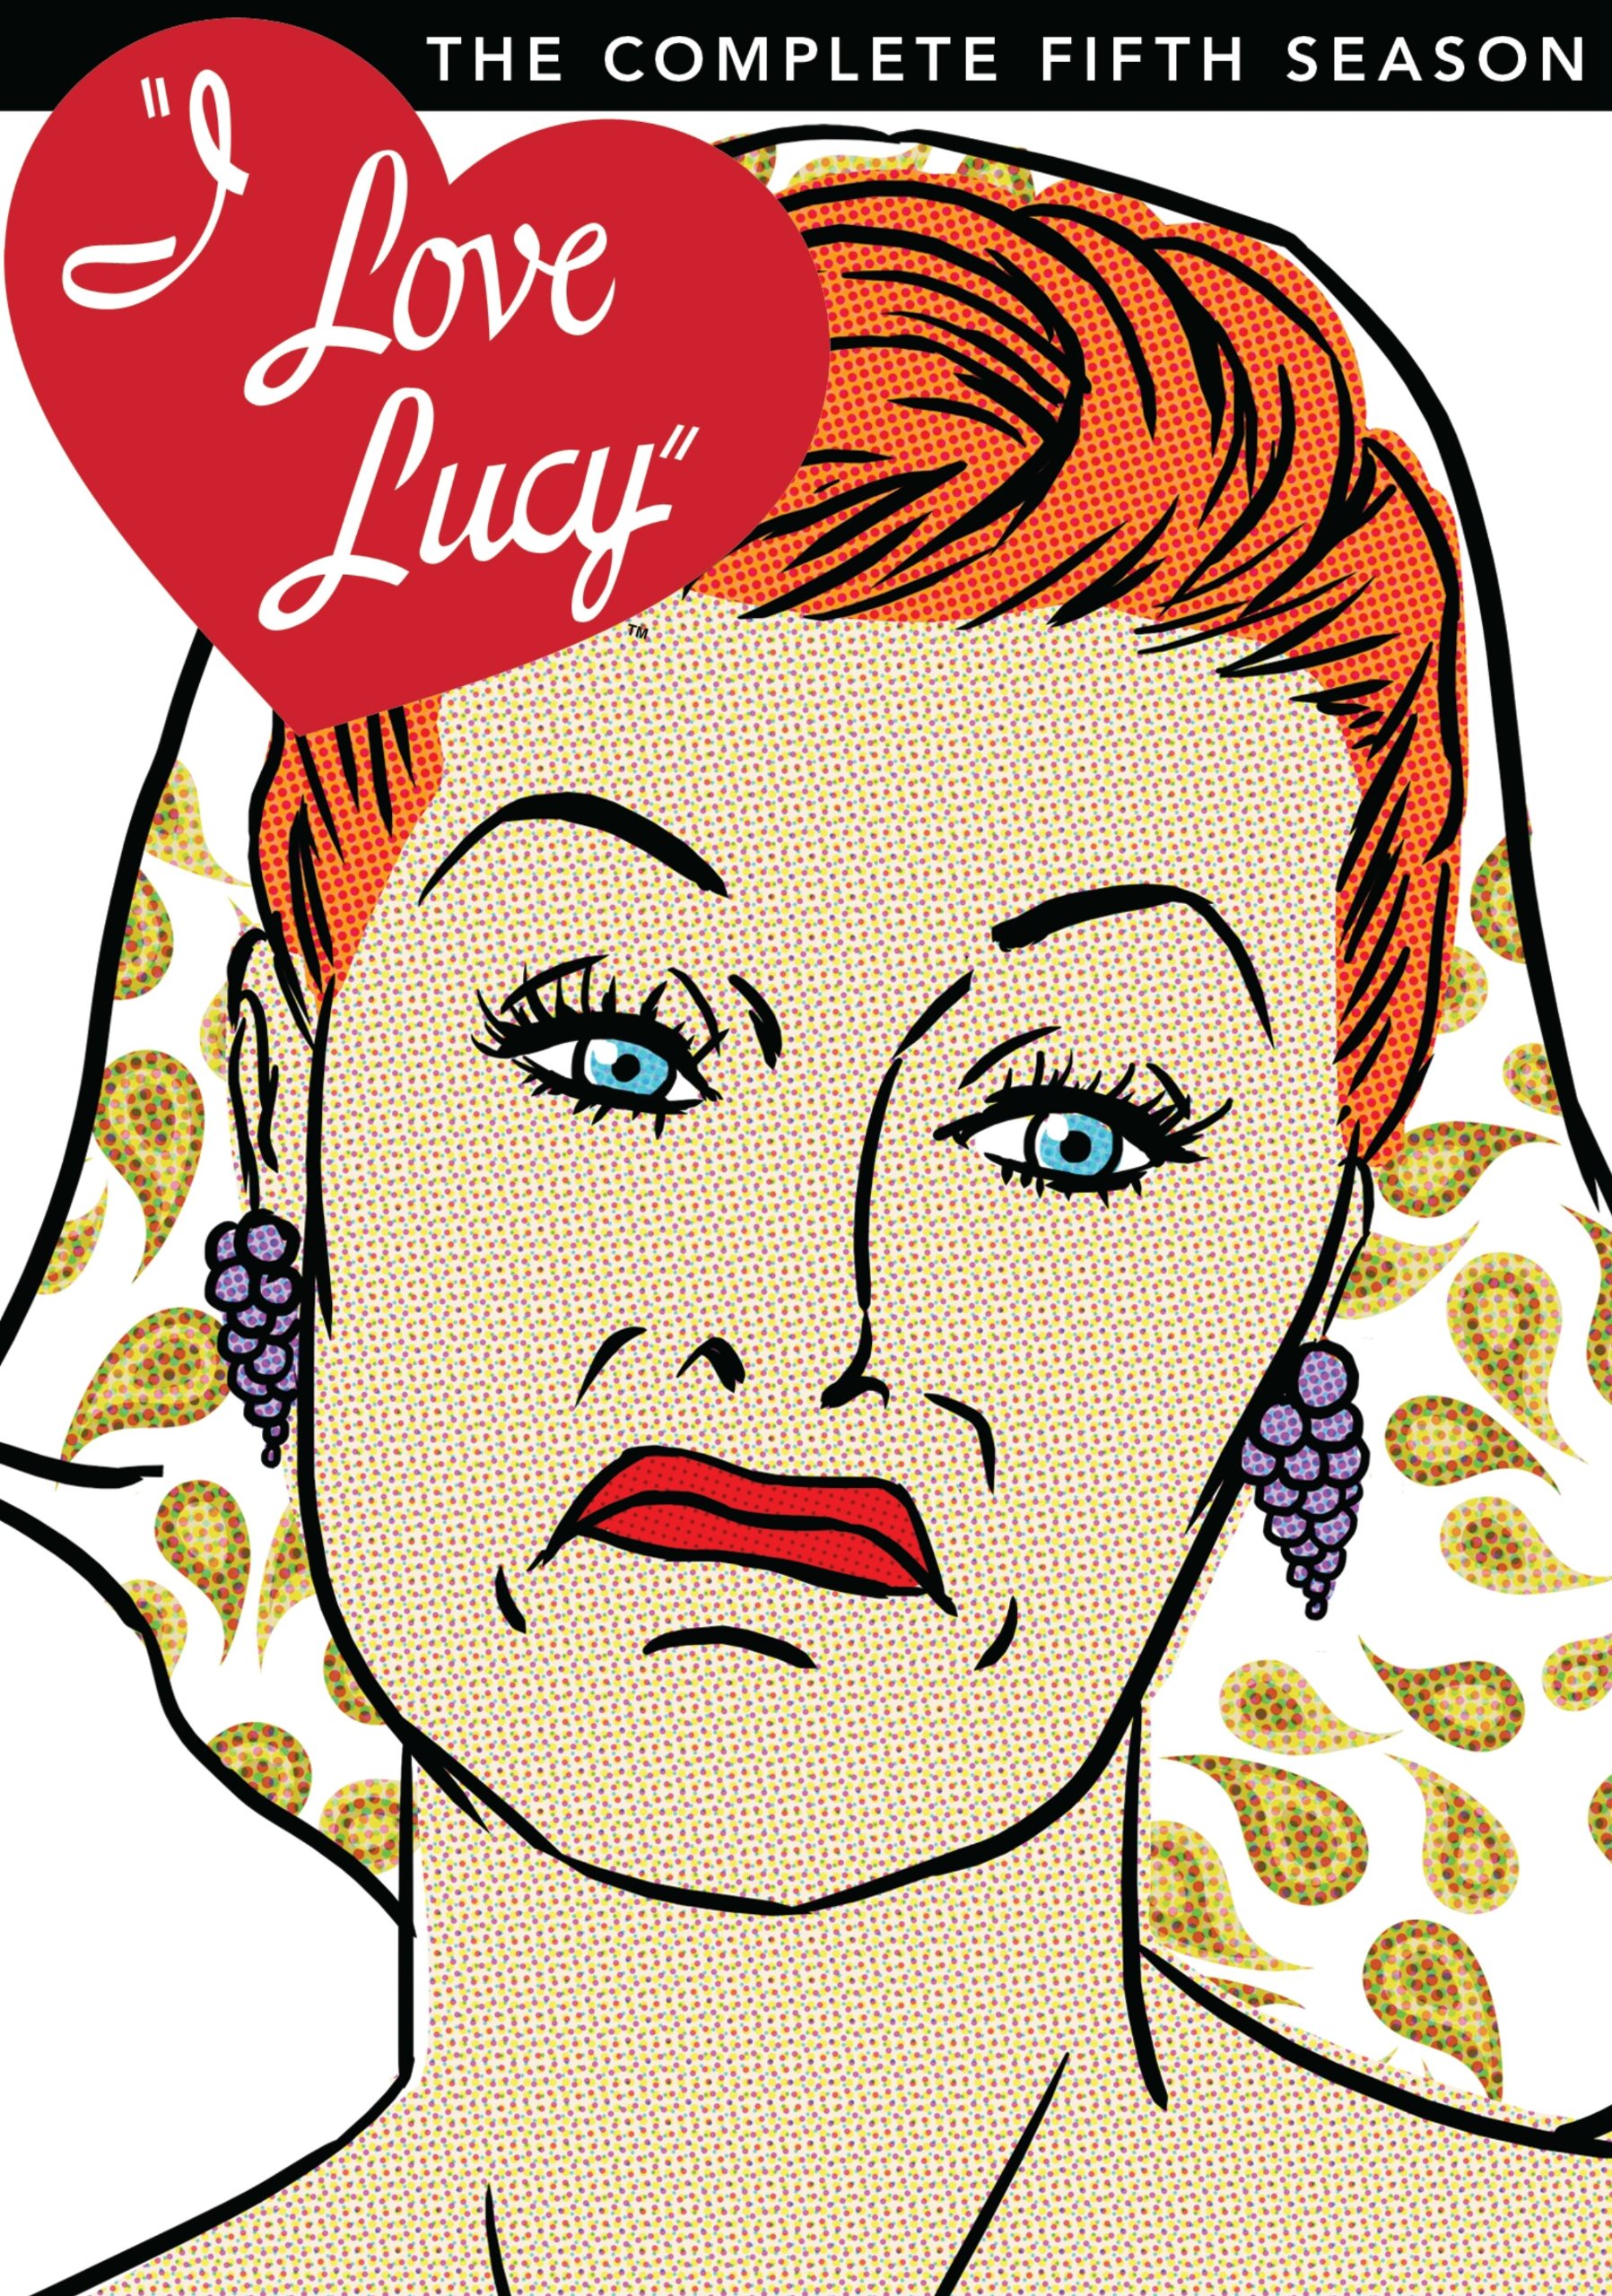 Я люблю Люси. Я люблю Люси Джон Уэйн. I Love Lucy DVD. Lucy DVD Cover.